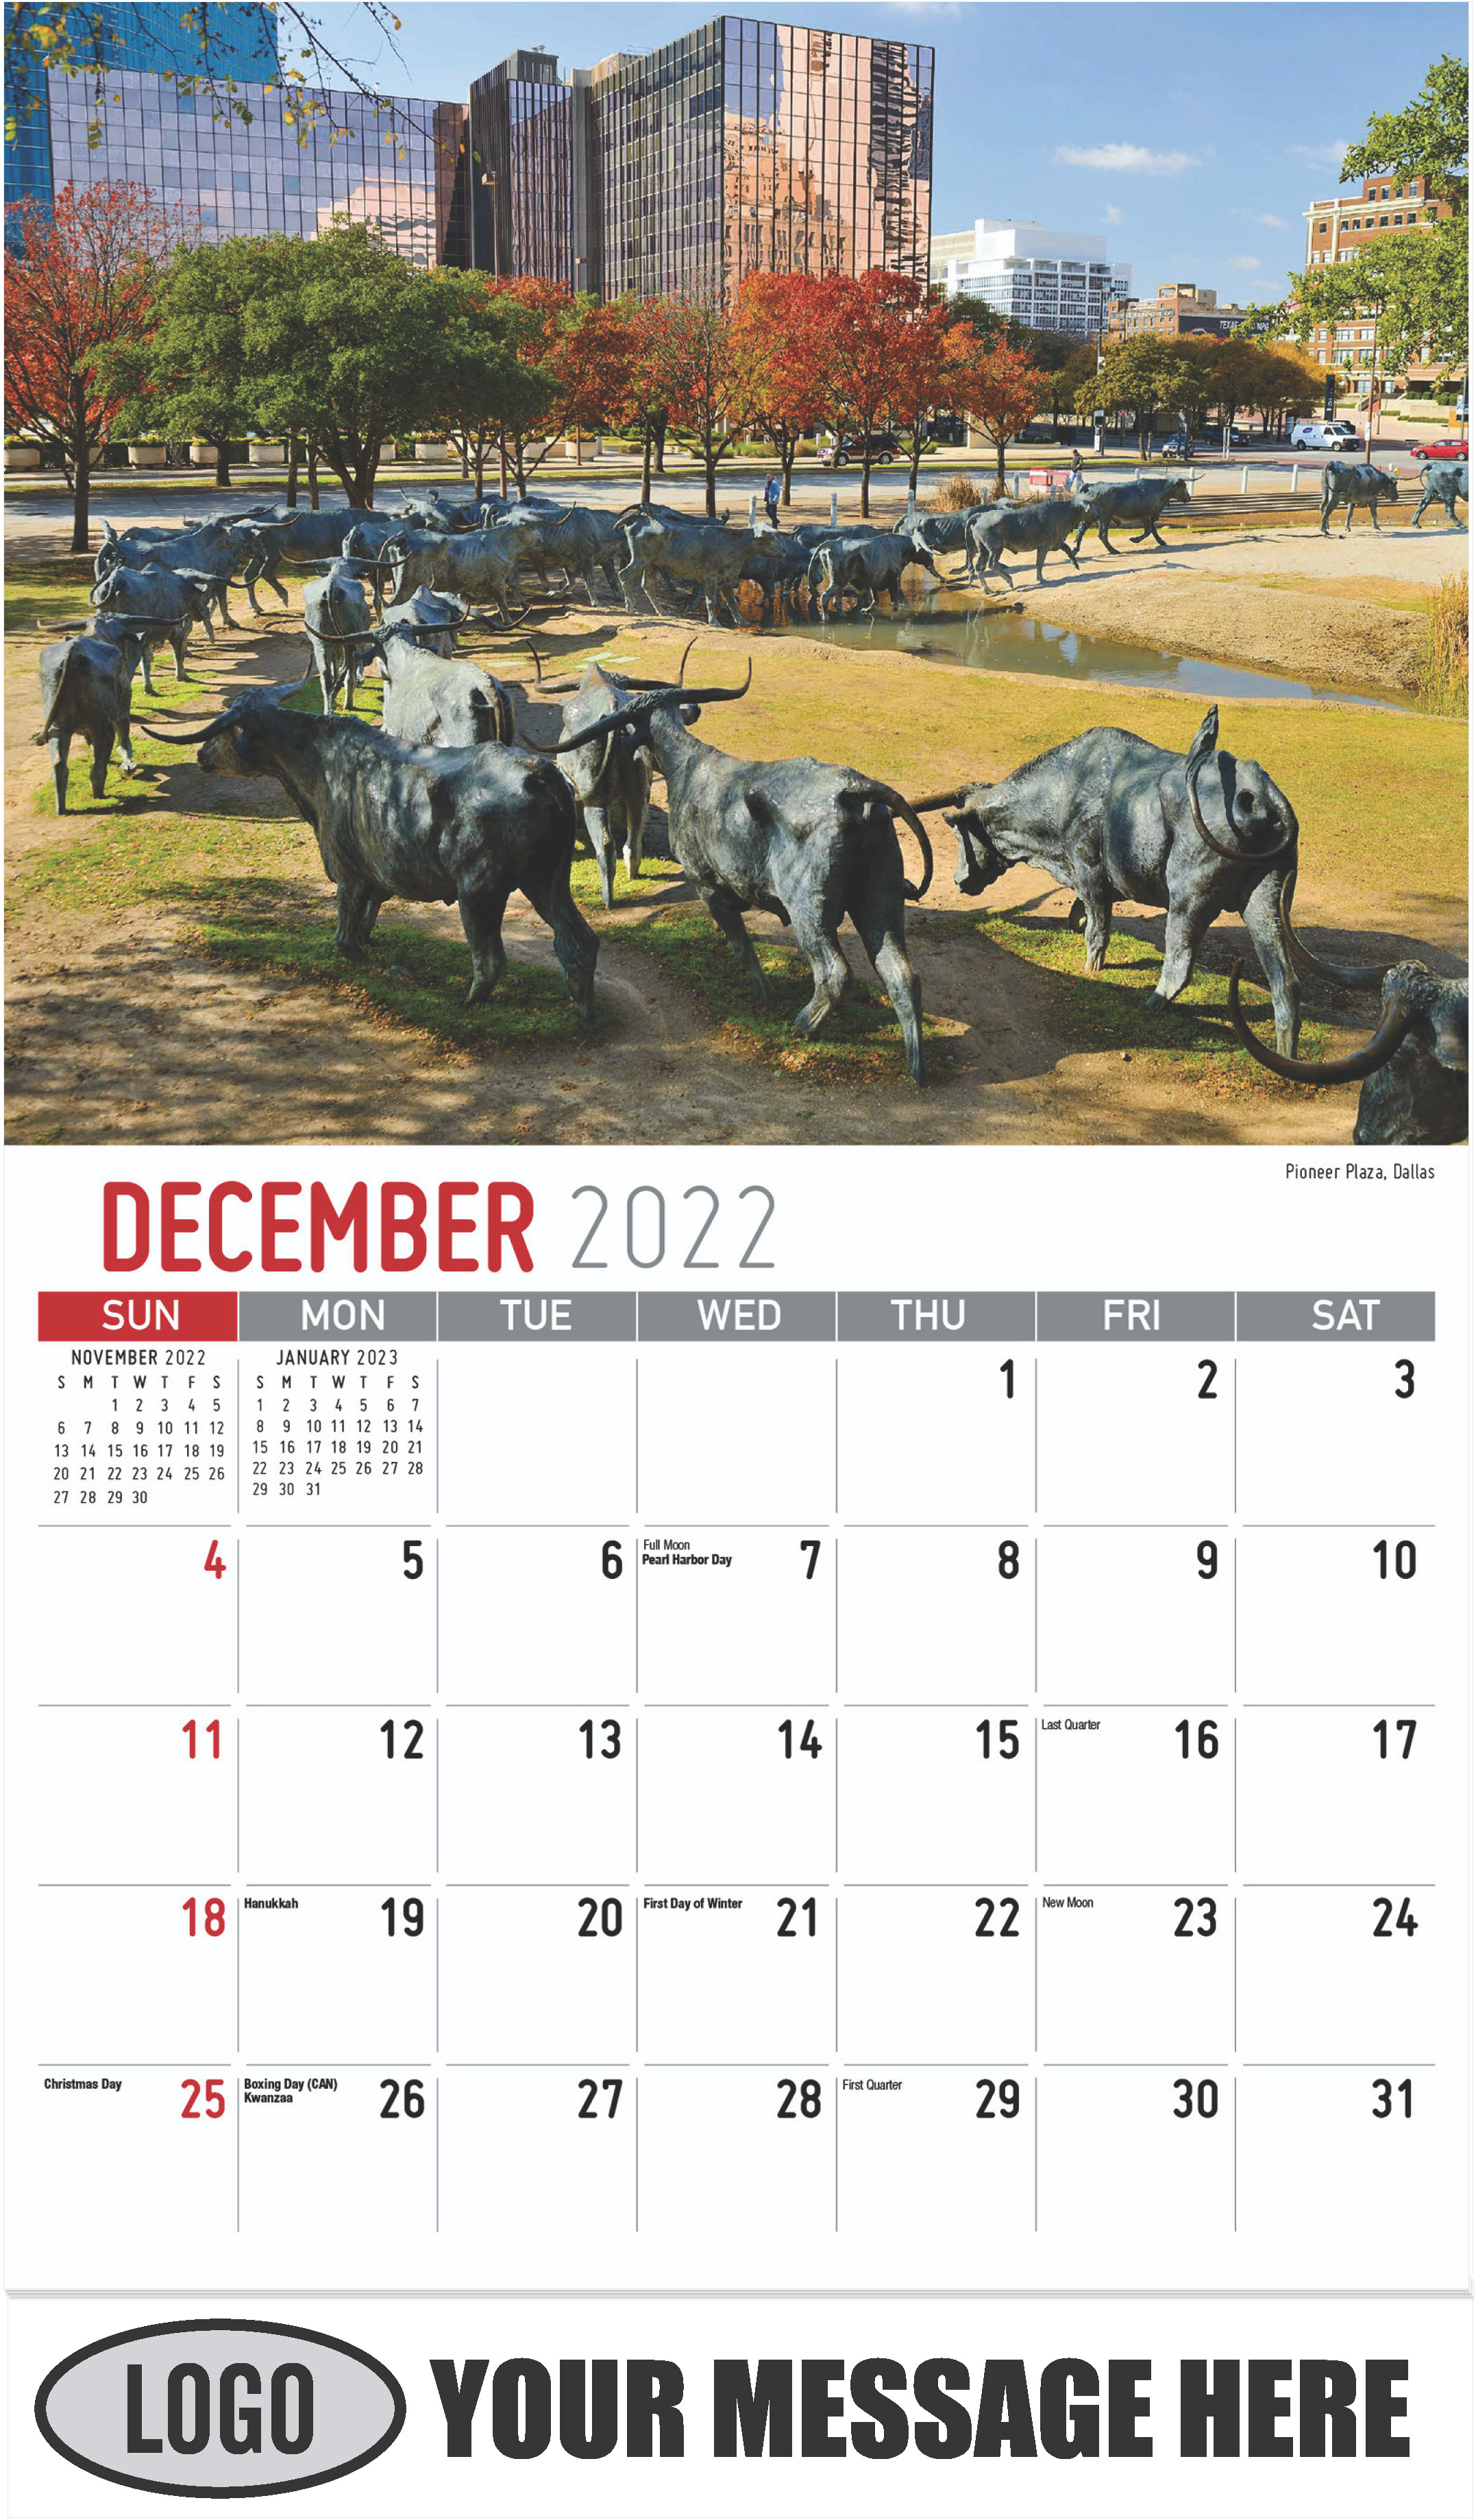 Pioneer Plaza, Dallas - December 2022 - Scenes of Texas 2023 Promotional Calendar